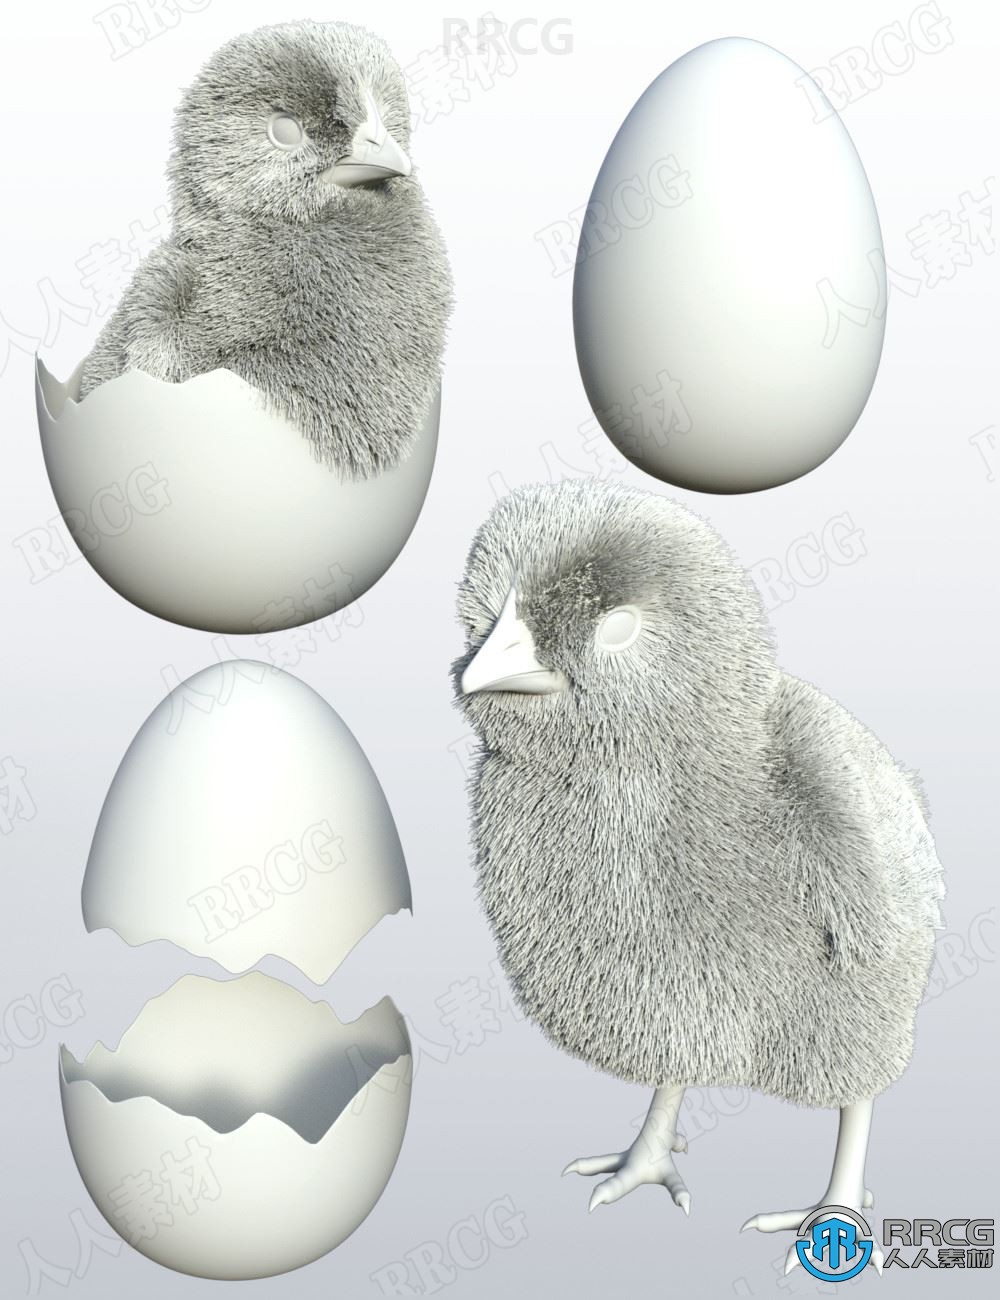 可爱刚孵化破壳小鸡家禽角色3D模型合集